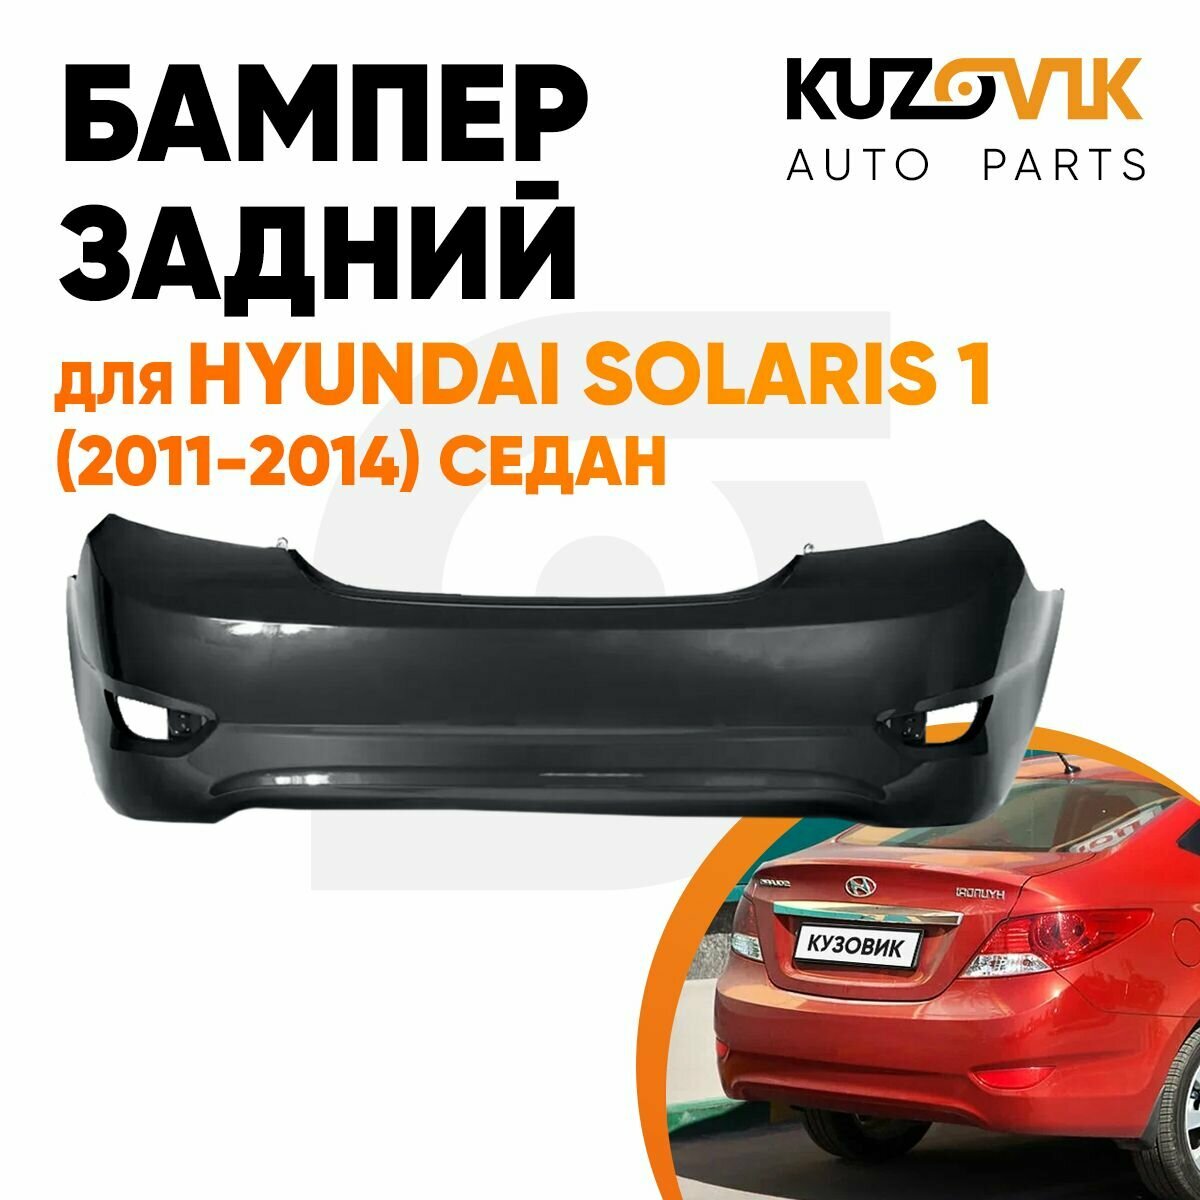 Бампер задний Hyundai Solaris (2011-2014) седан